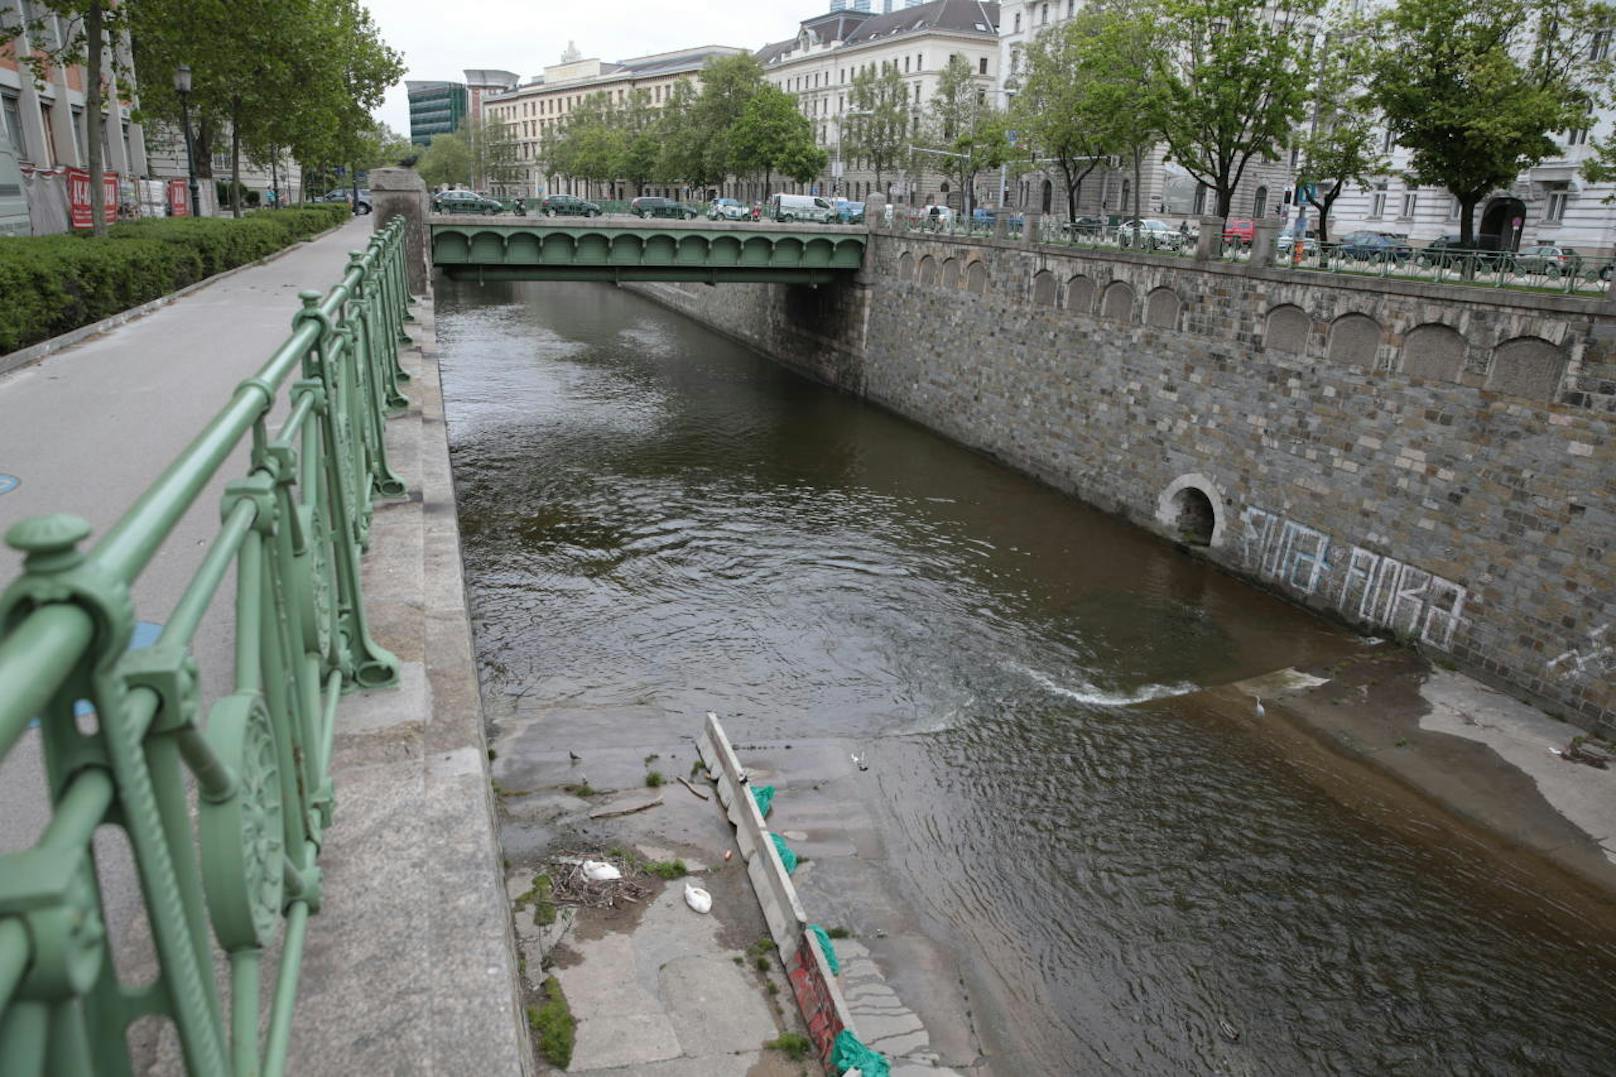 Schwäne am Wien-Fluß bei der Stubenbrücke mit Nest und Eiern sowie eigens errichtetem "Hochwasser-Schutz"